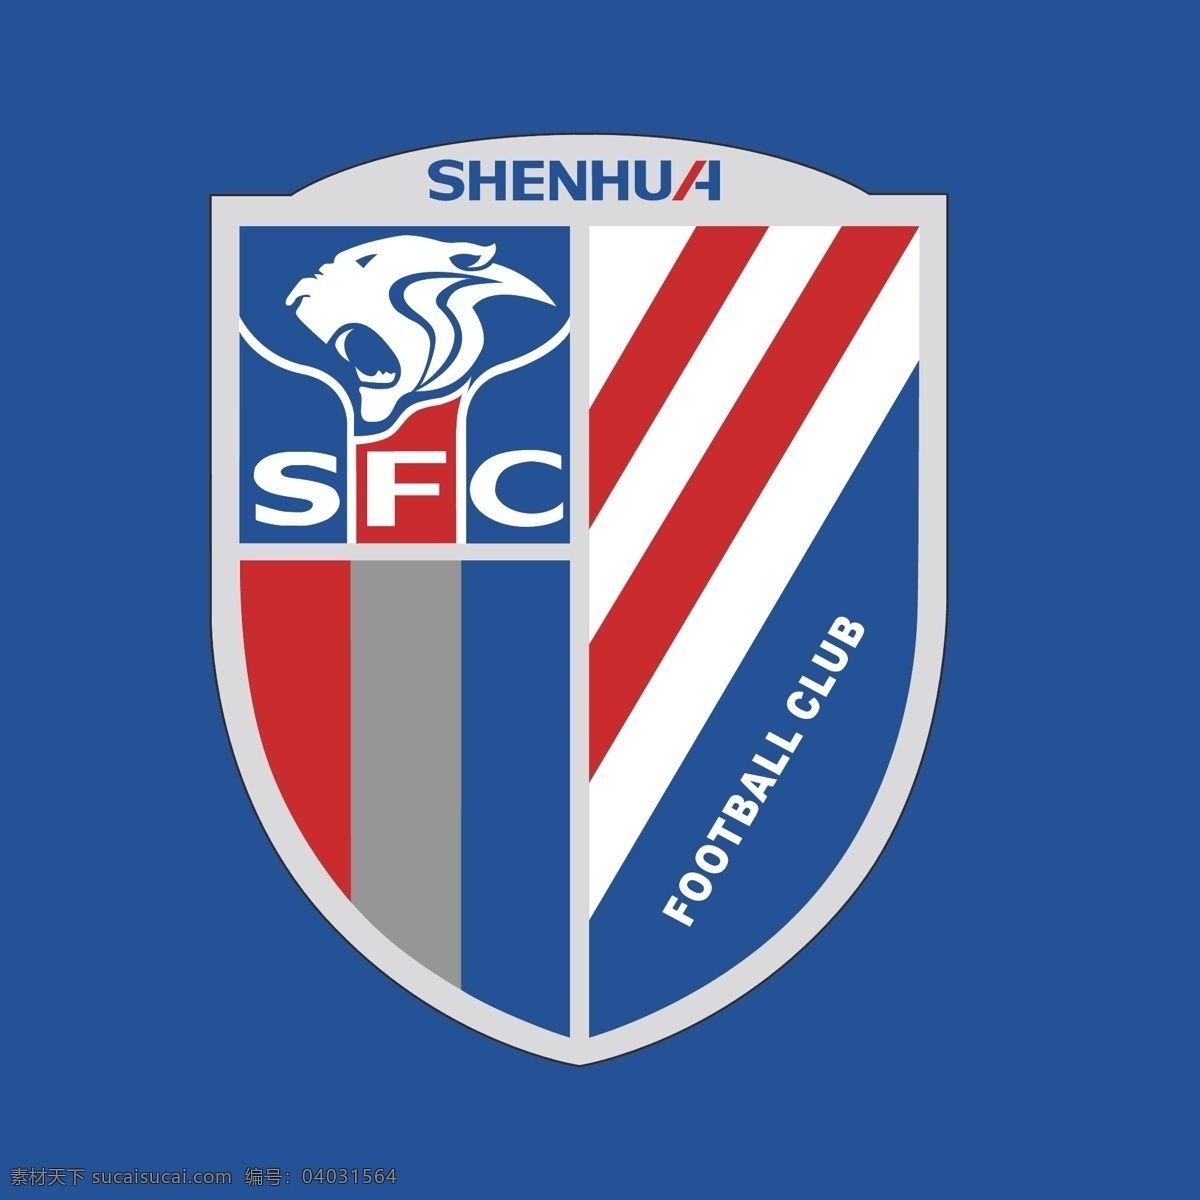 上海申花队 标志 上海 申花 天津泰达 足球 中超 联赛 football 运动 亚冠 亚洲杯 世界杯 足球标志 logo设计 蓝色